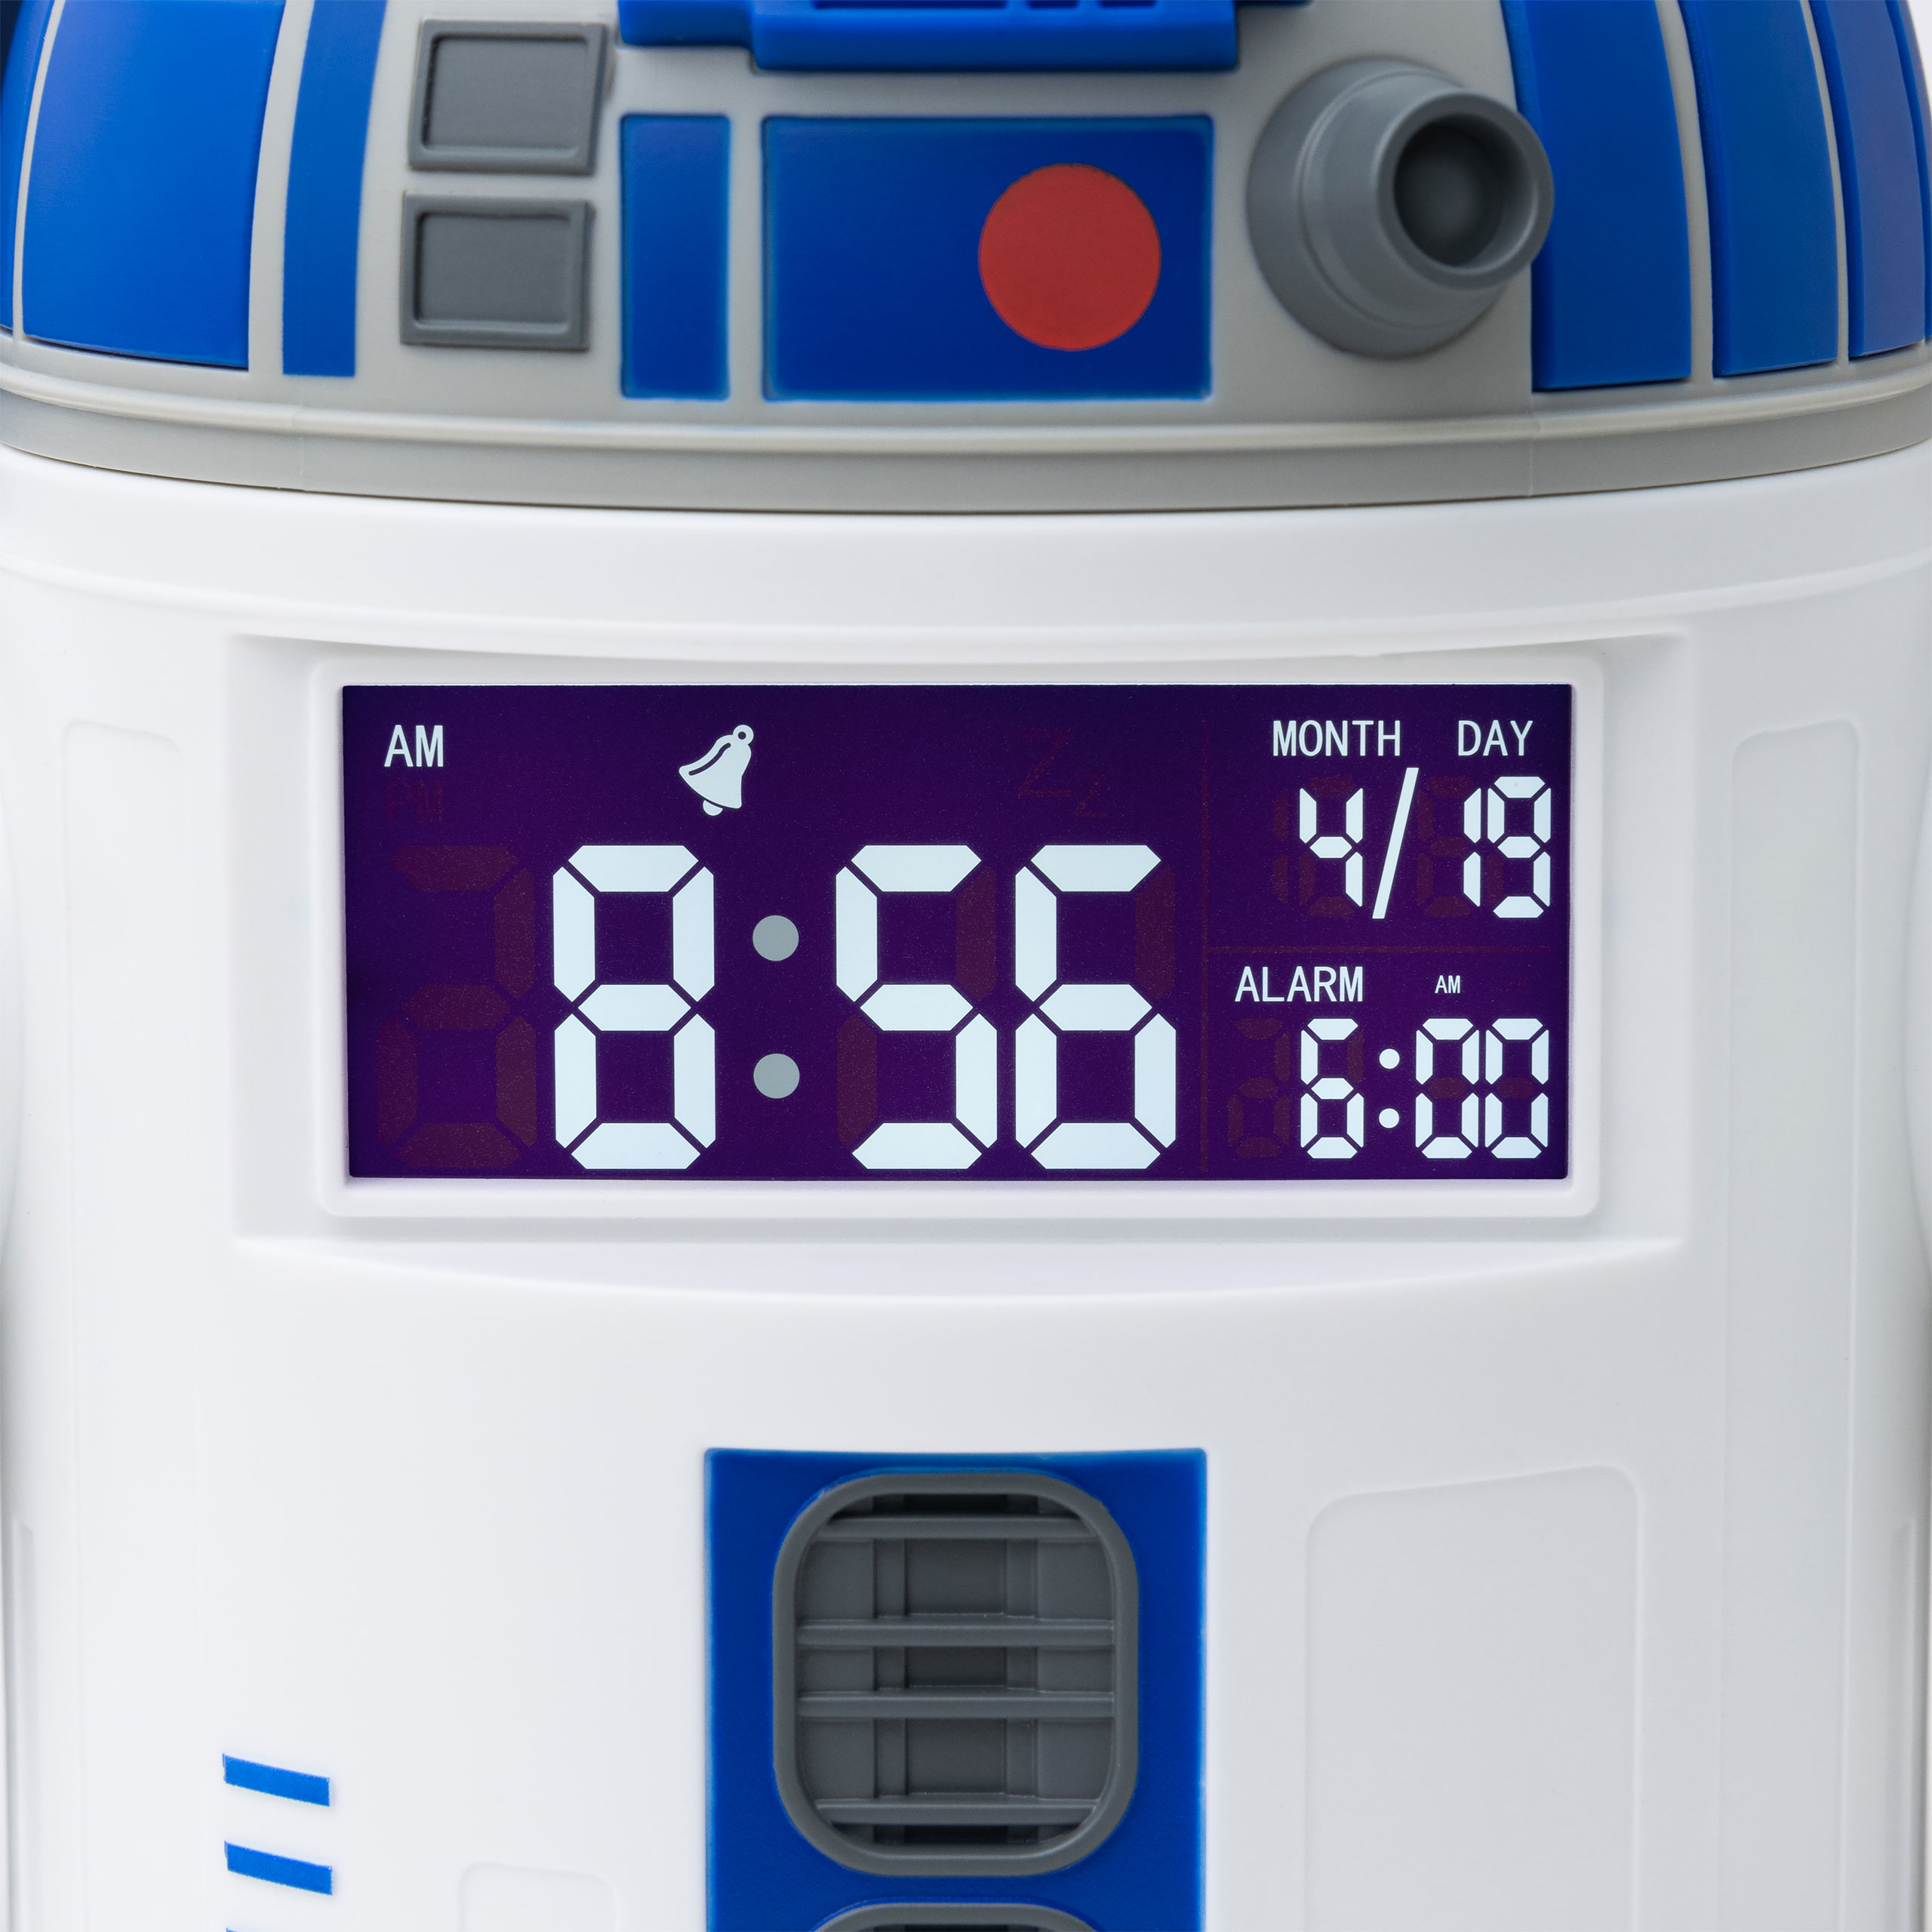 Star Wars - R2-D2 wekker